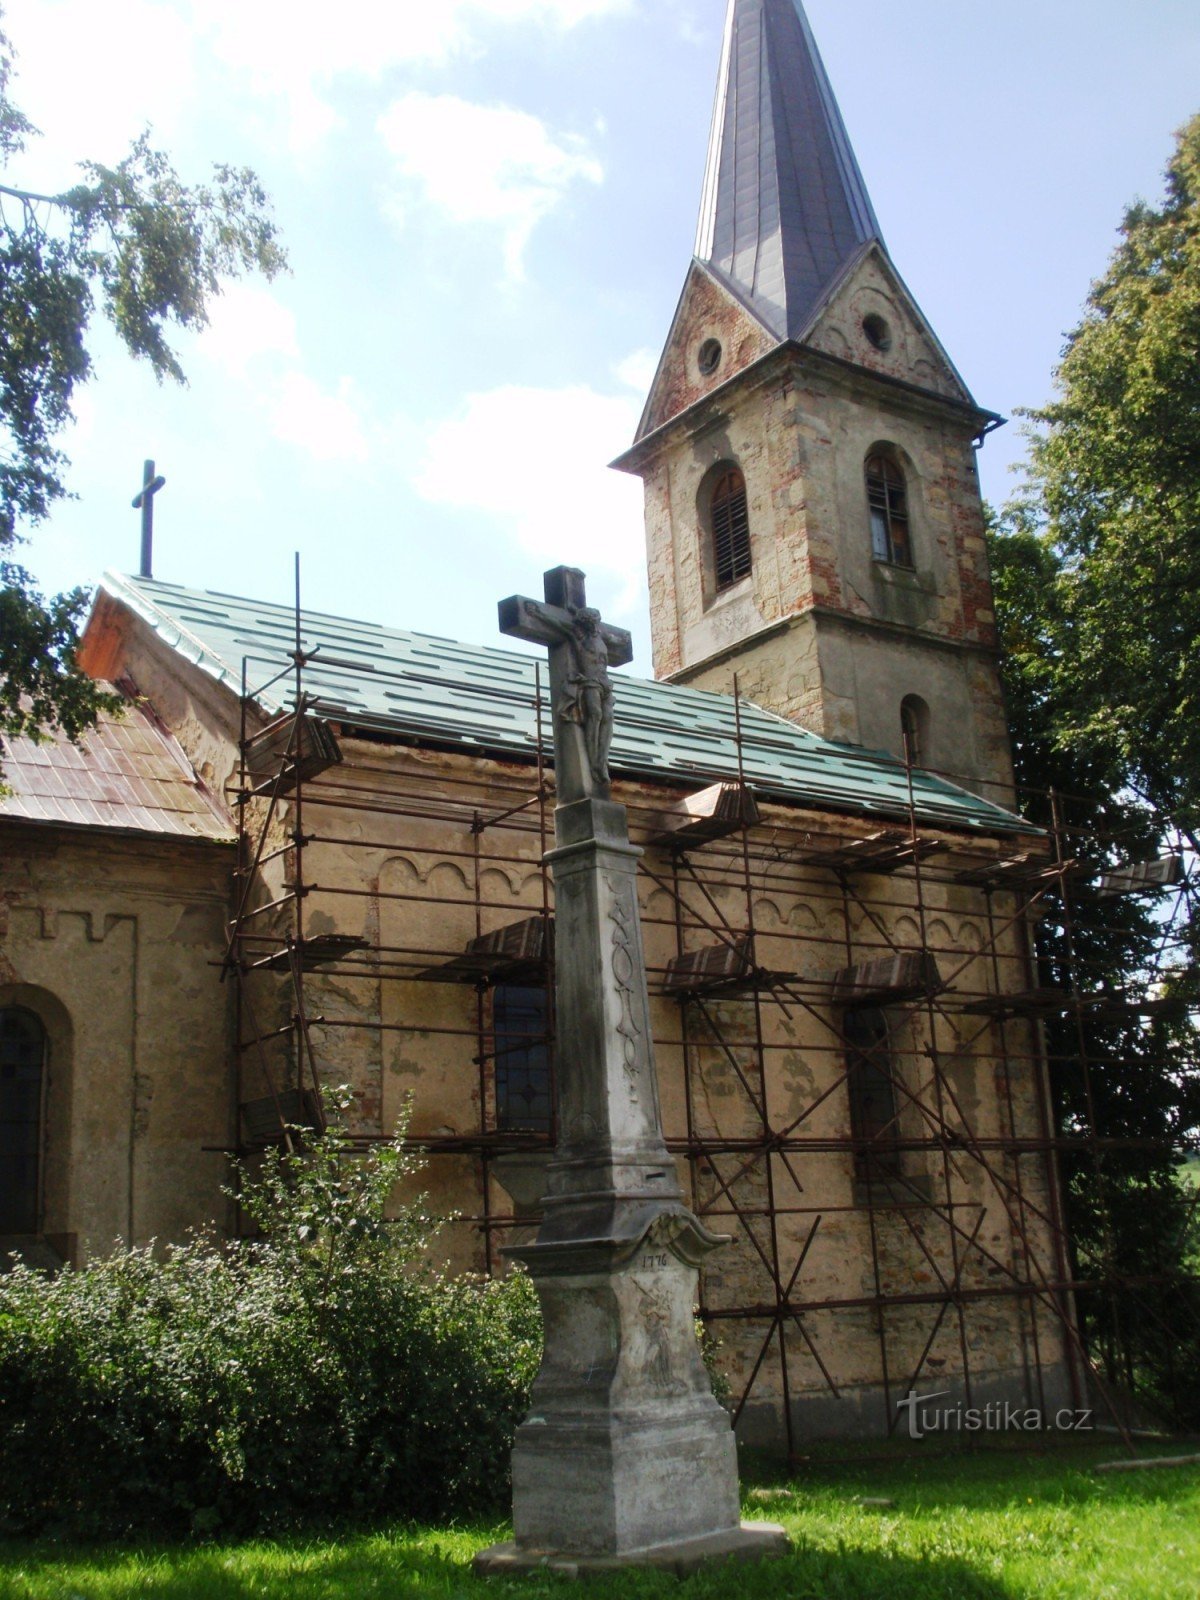 Аненська криниця, церква св. лаврове дерево